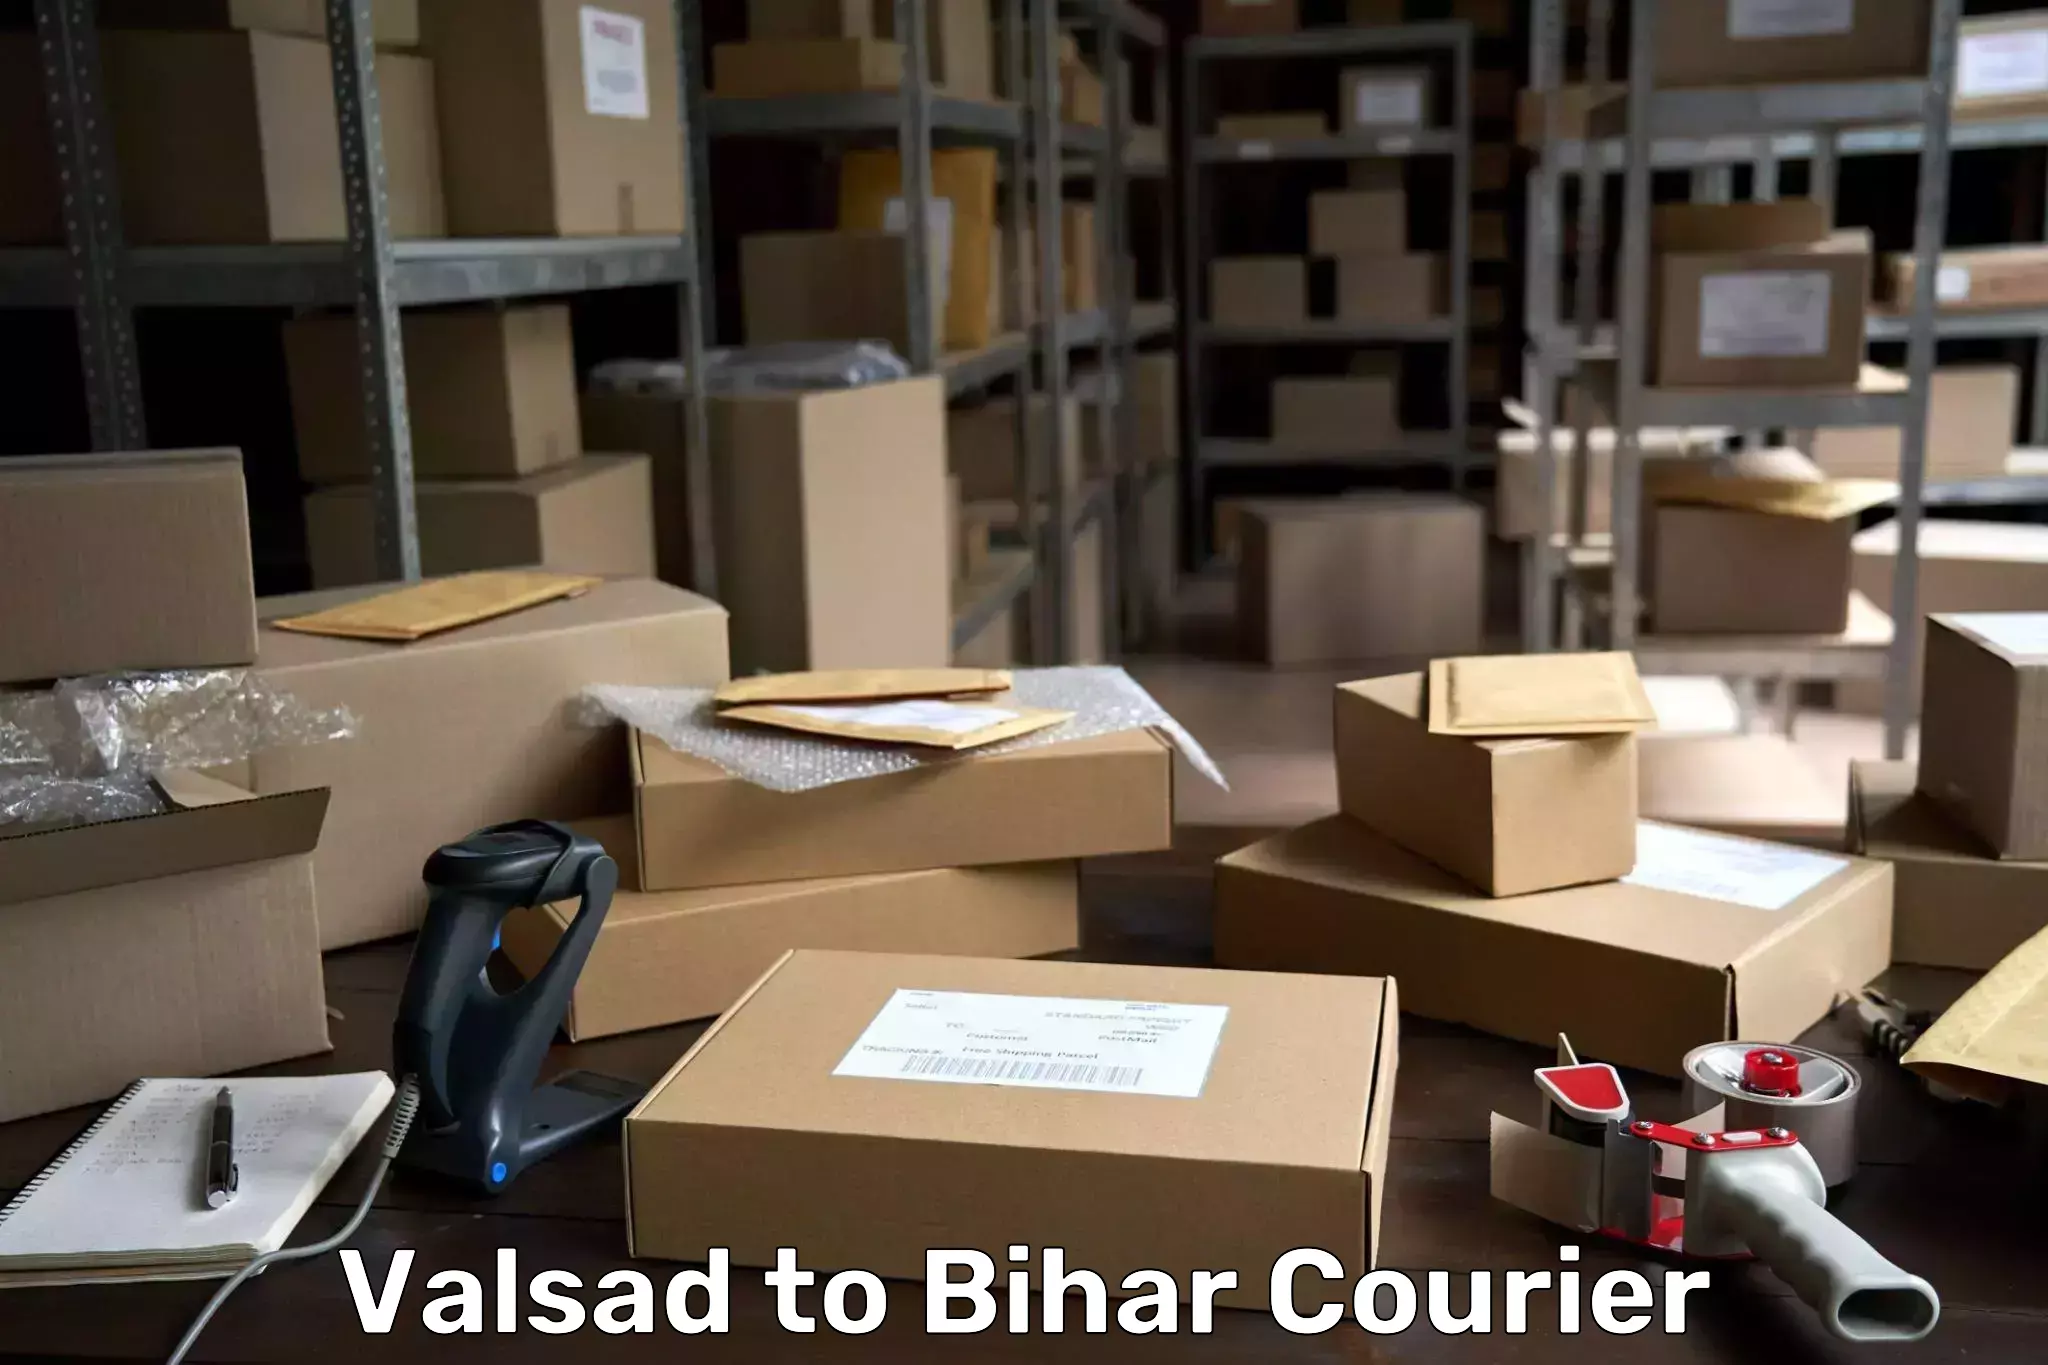 Door-to-door freight service Valsad to Gaya